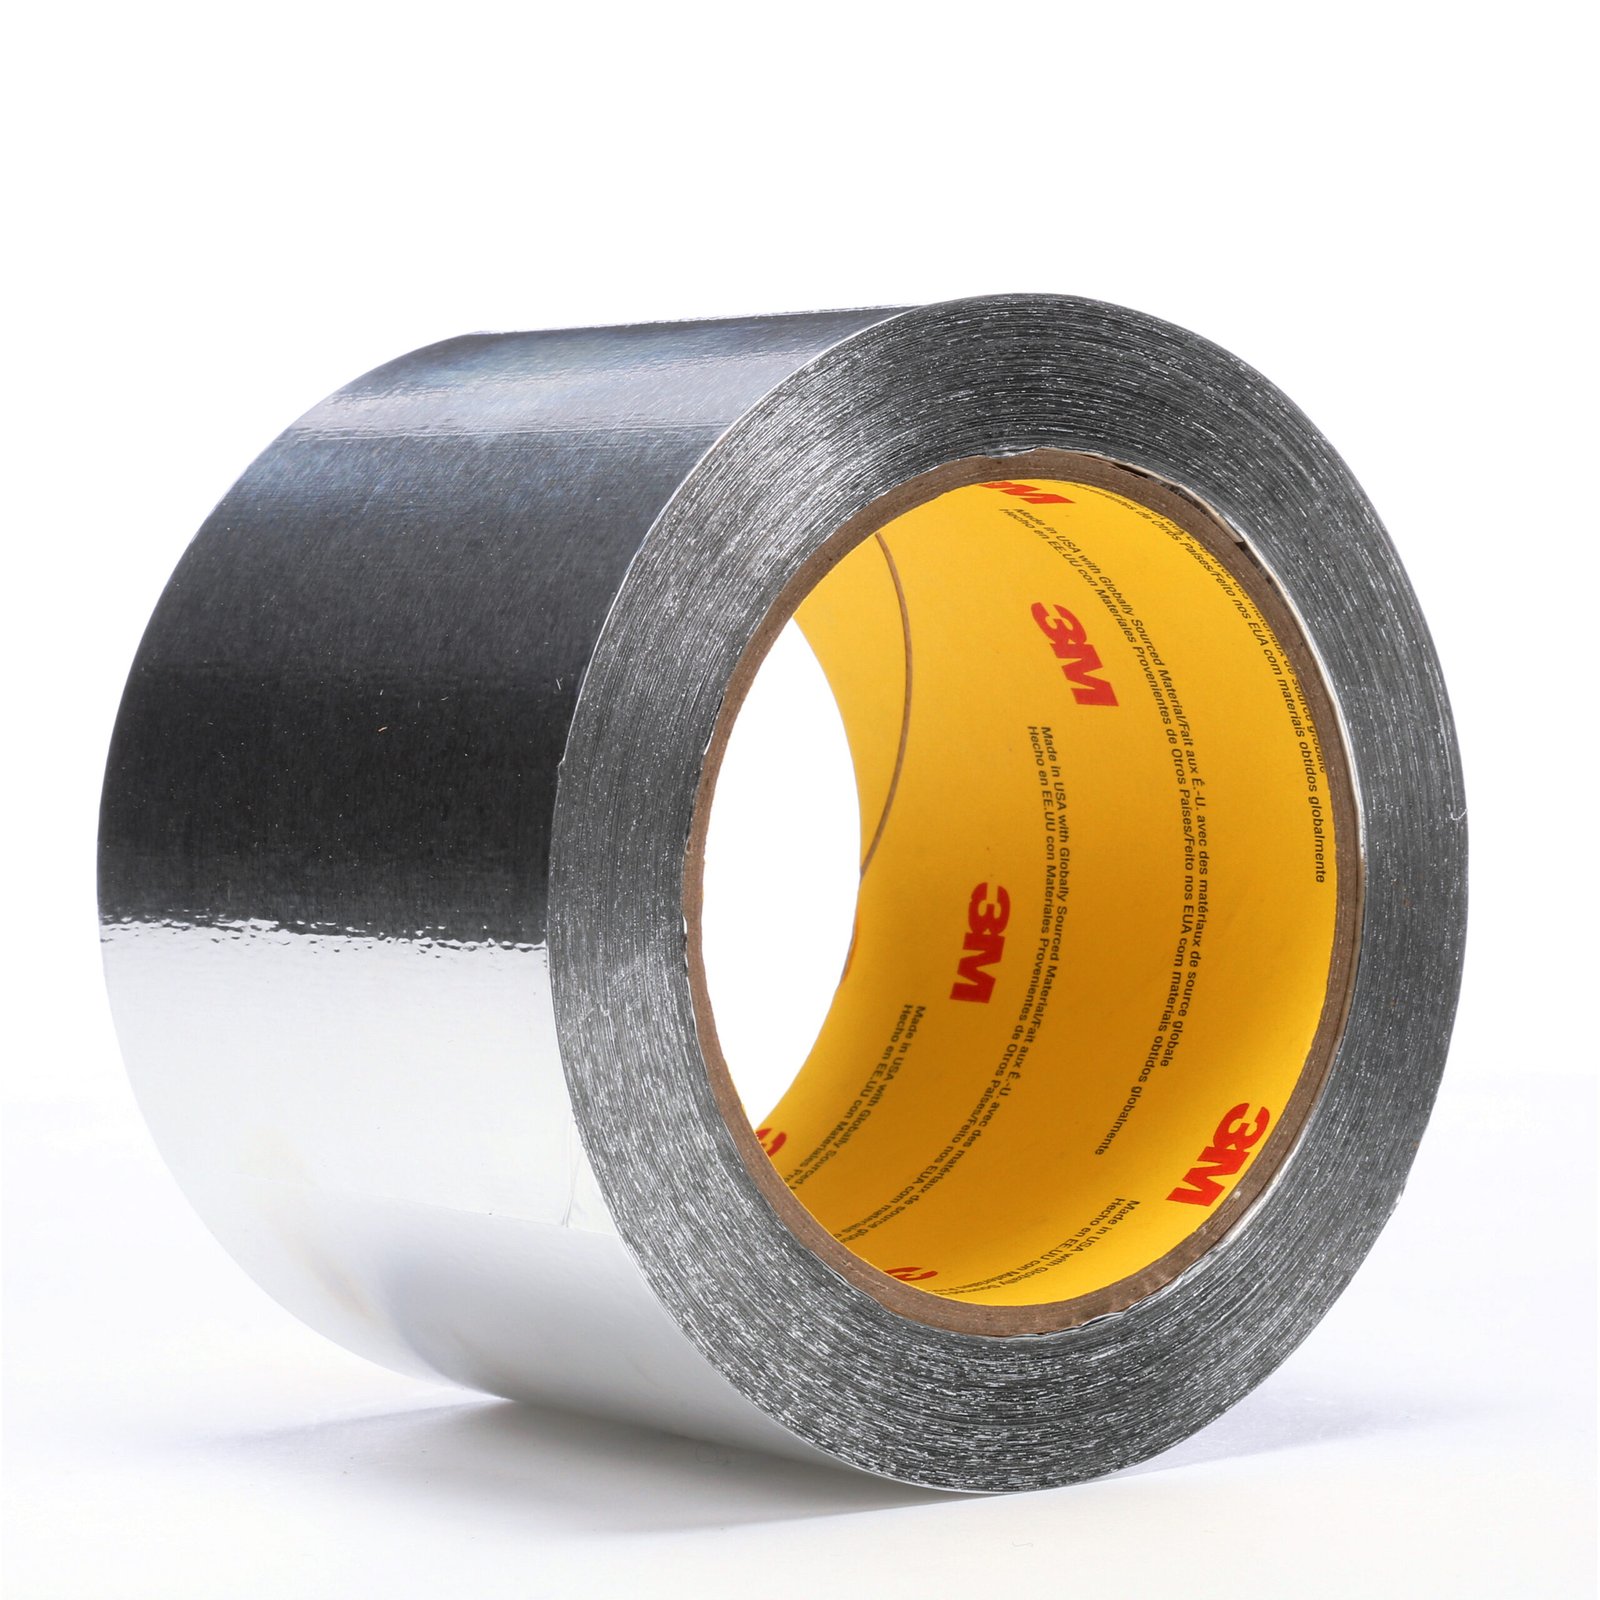 Distributor of 3M 425 Aluminium Foil Tape in UAE